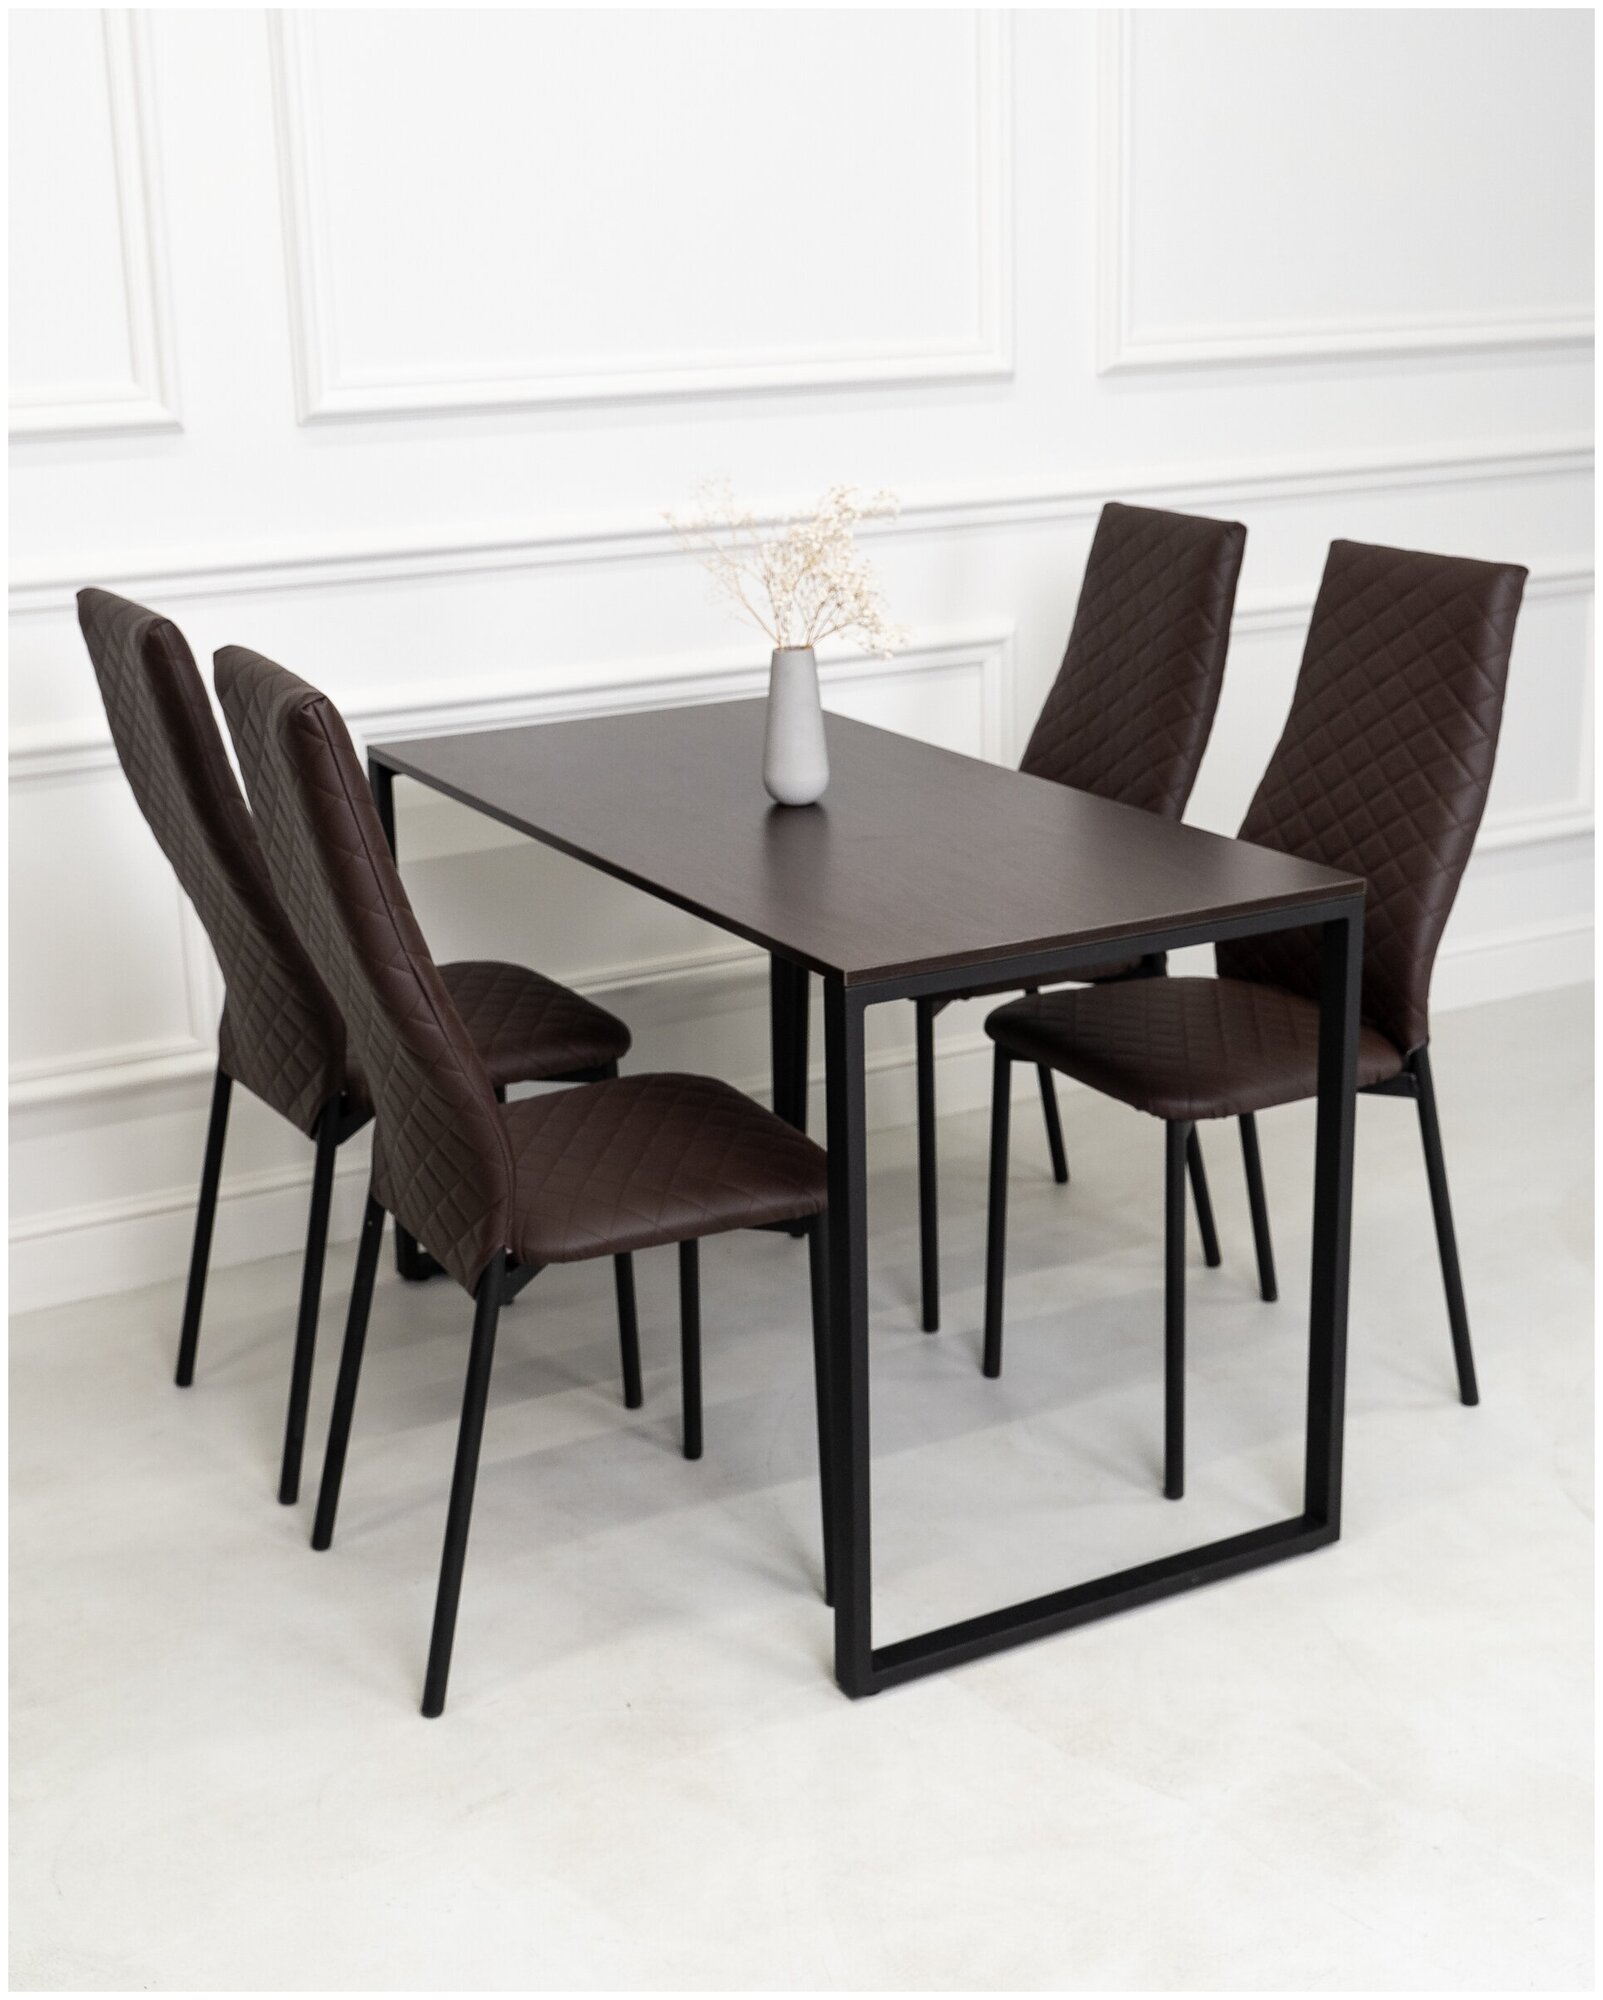 Обеденная группа Стол и 4 стула, стол «Венге» 120х60х75, стулья Коричневые искусственная кожа 4 шт.